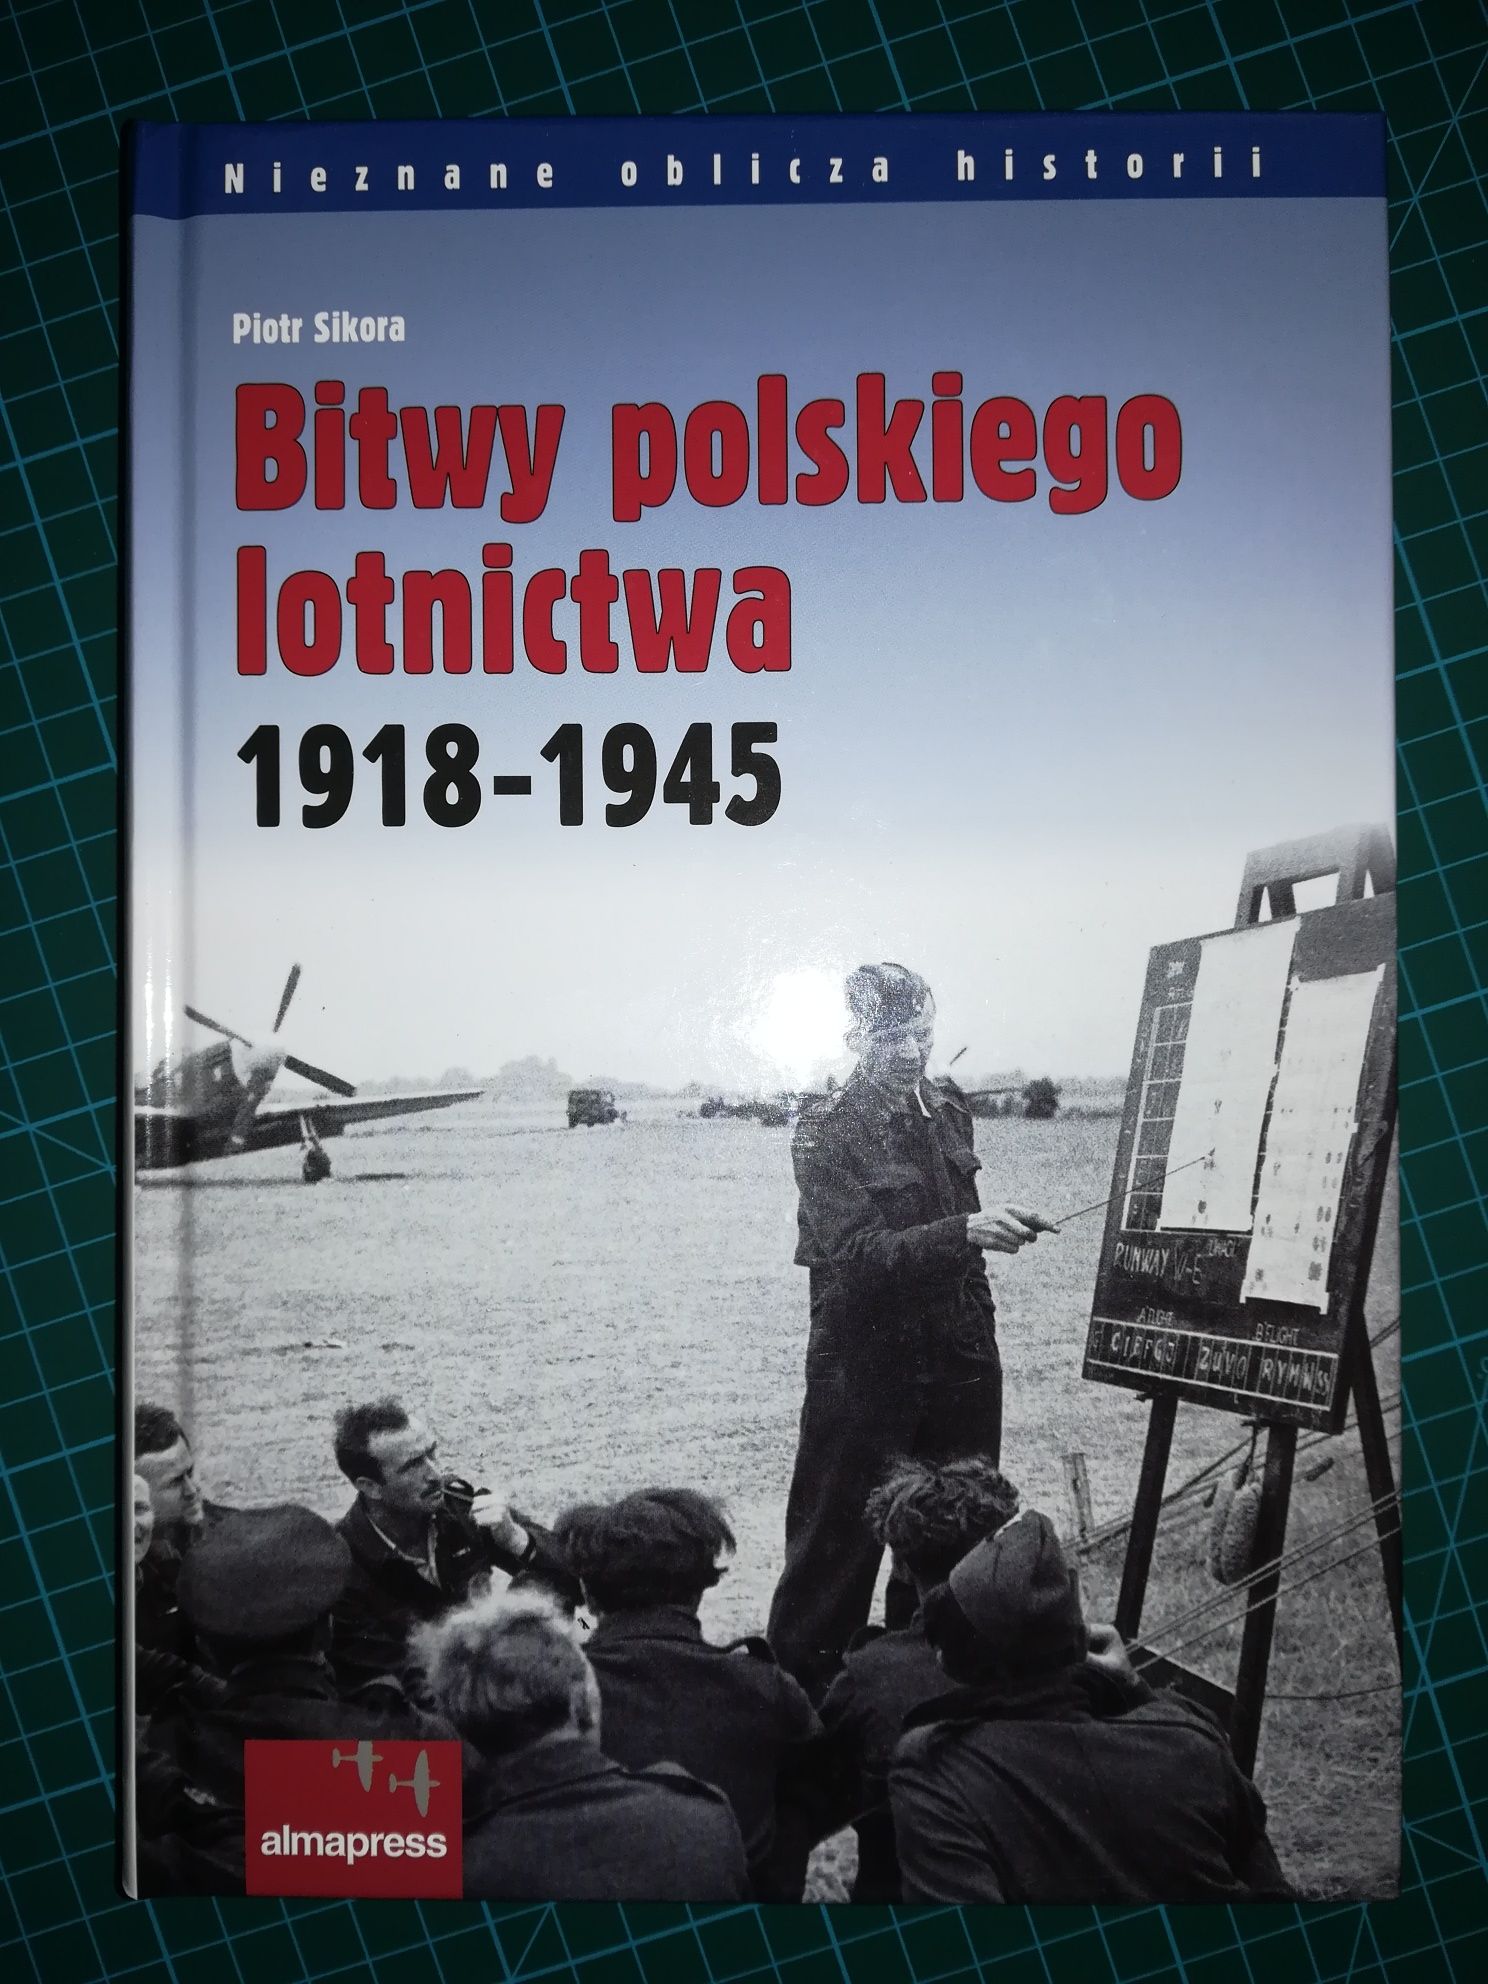 Bitwy polskiego lotnictwa 1918 - 1945 / Piotr Sikora / Lotnictwo